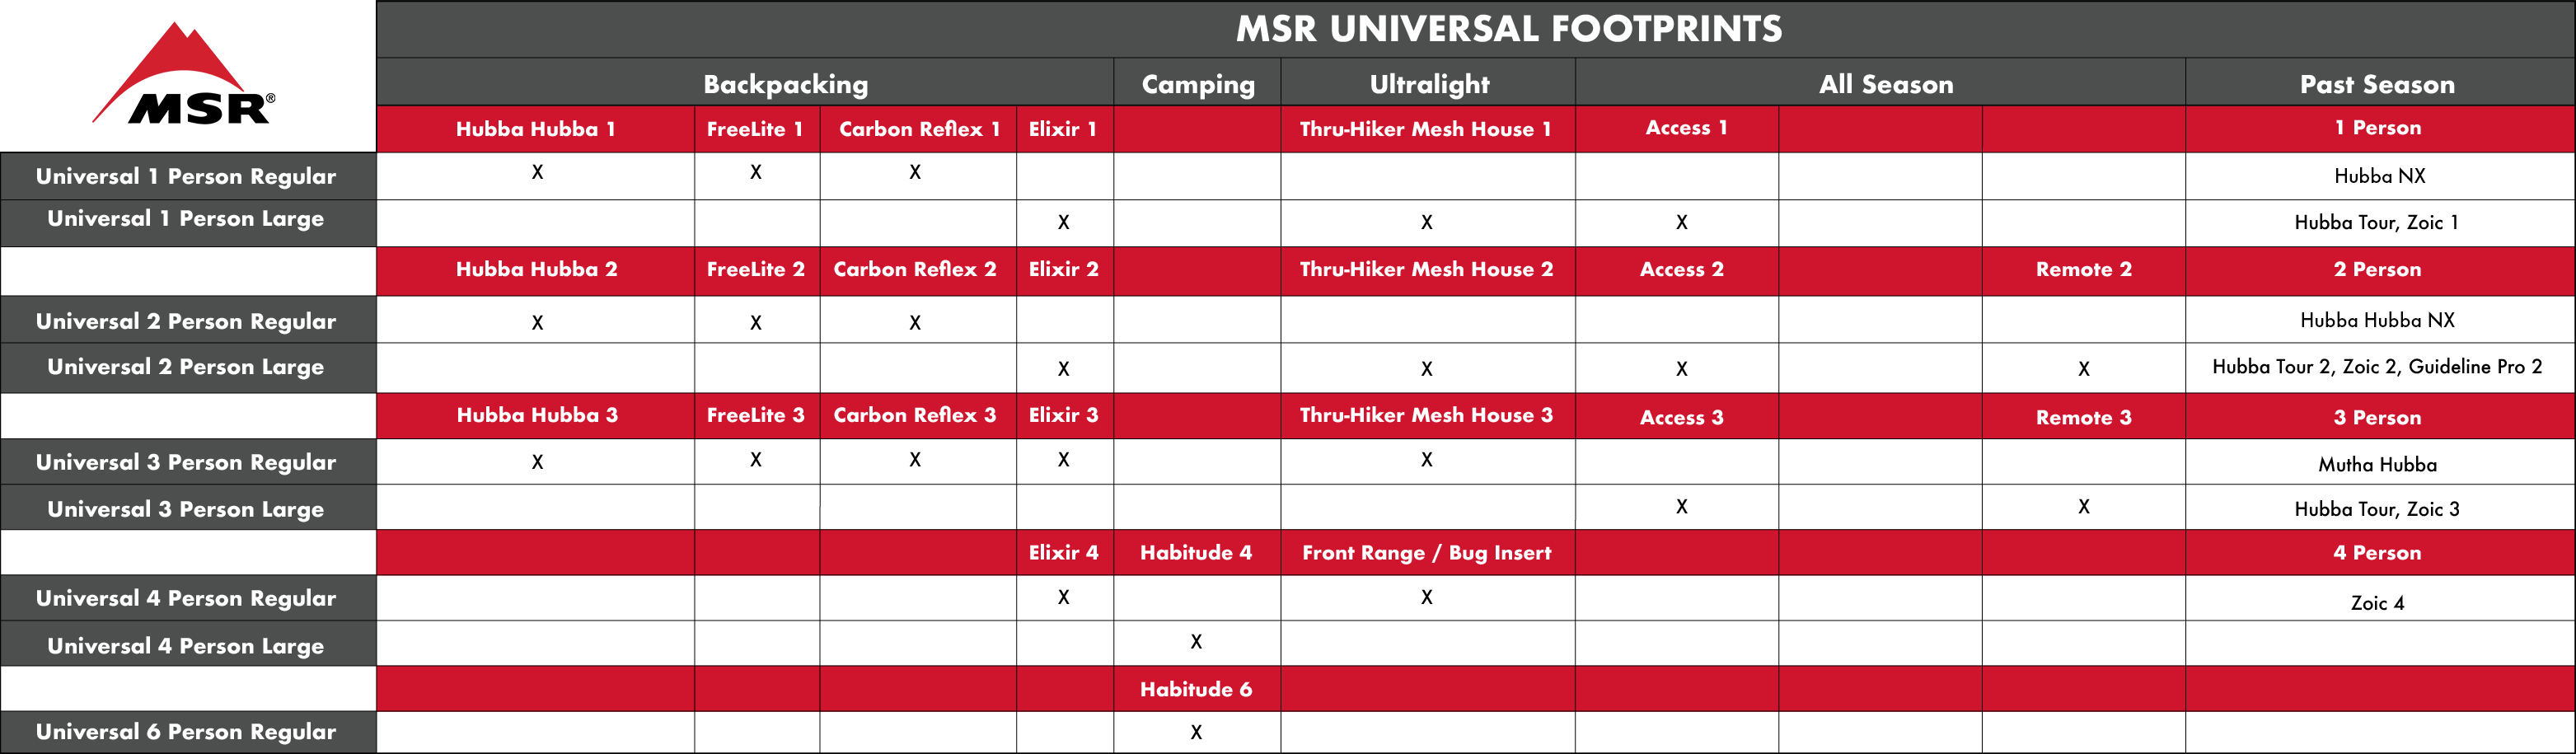 MSR Universal 2 Footprint 